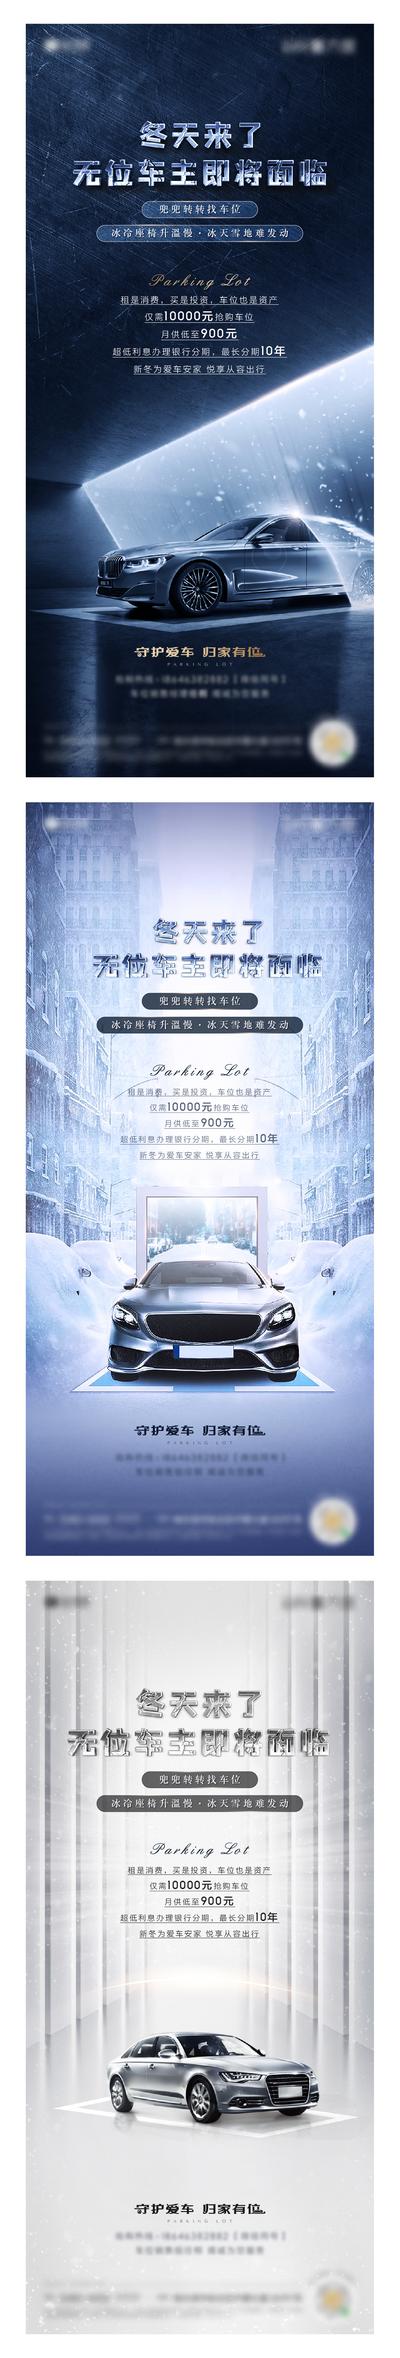 【南门网】海报 房地产 车位 汽车 车 冬季 防寒 寒潮 雪 雪天 